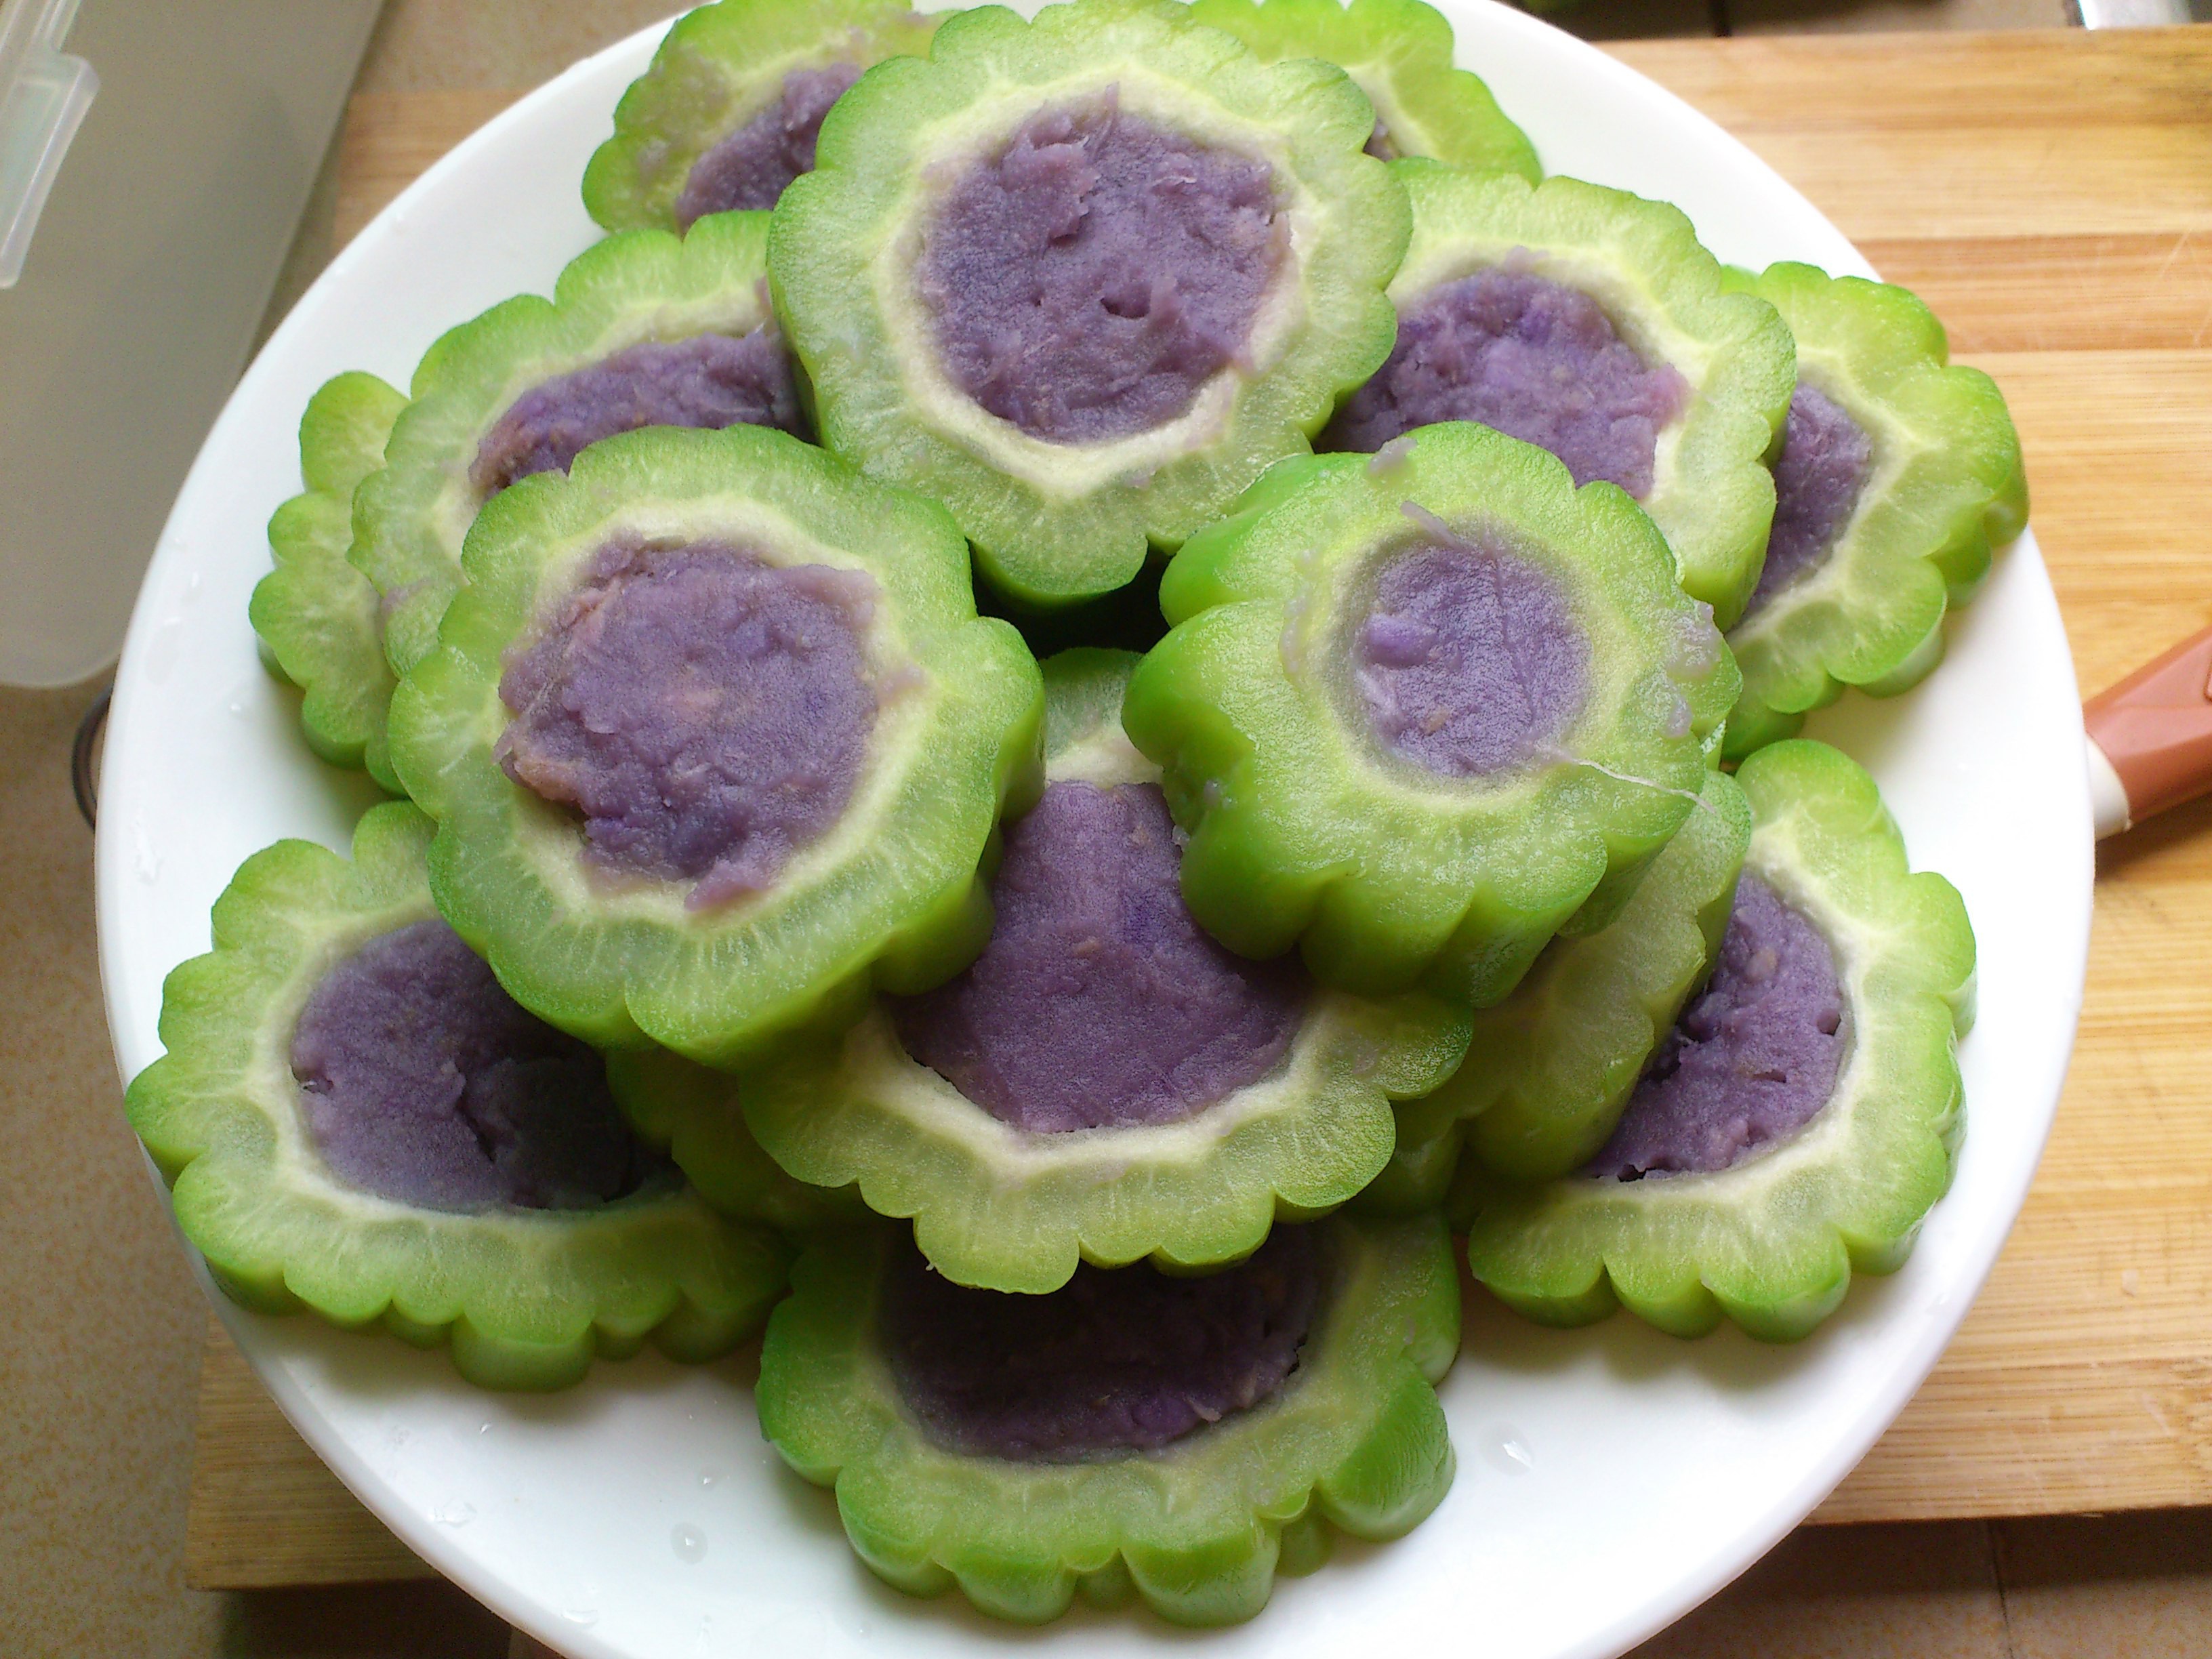 紫薯苦瓜圈